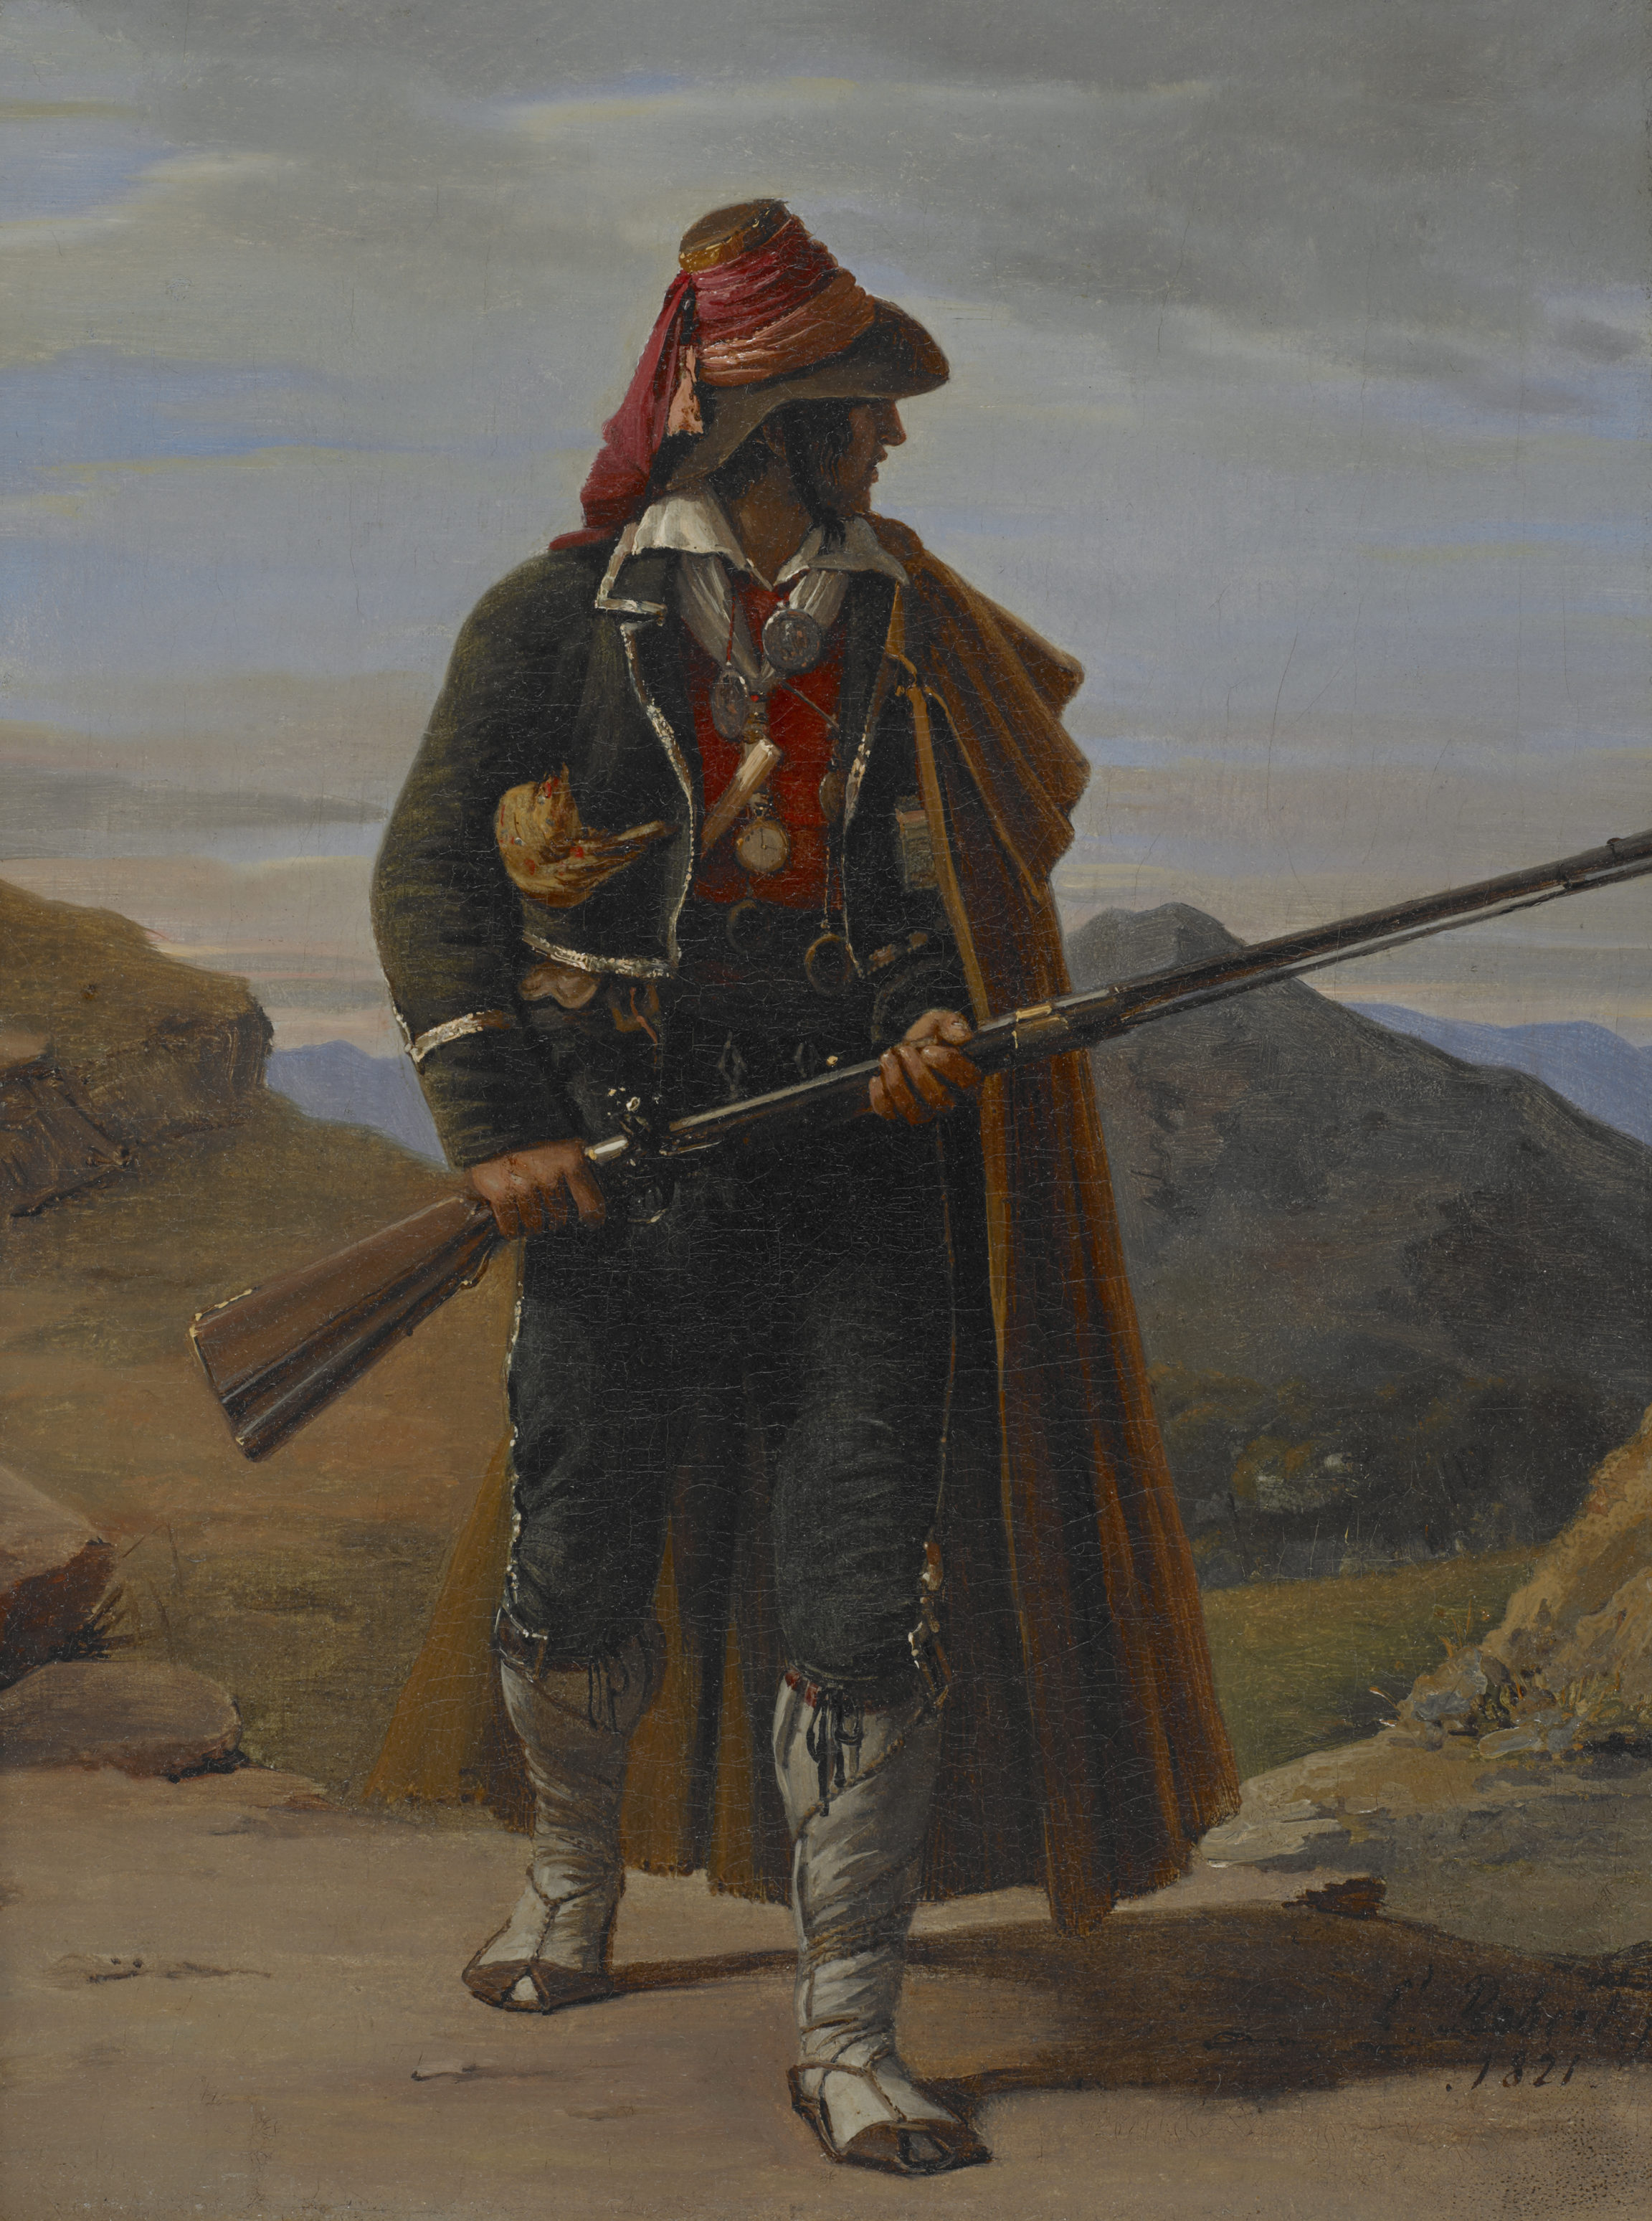 Léopold Robert, Brigand de la campagne romaine (Brigand in the Roman Campagna), 1821